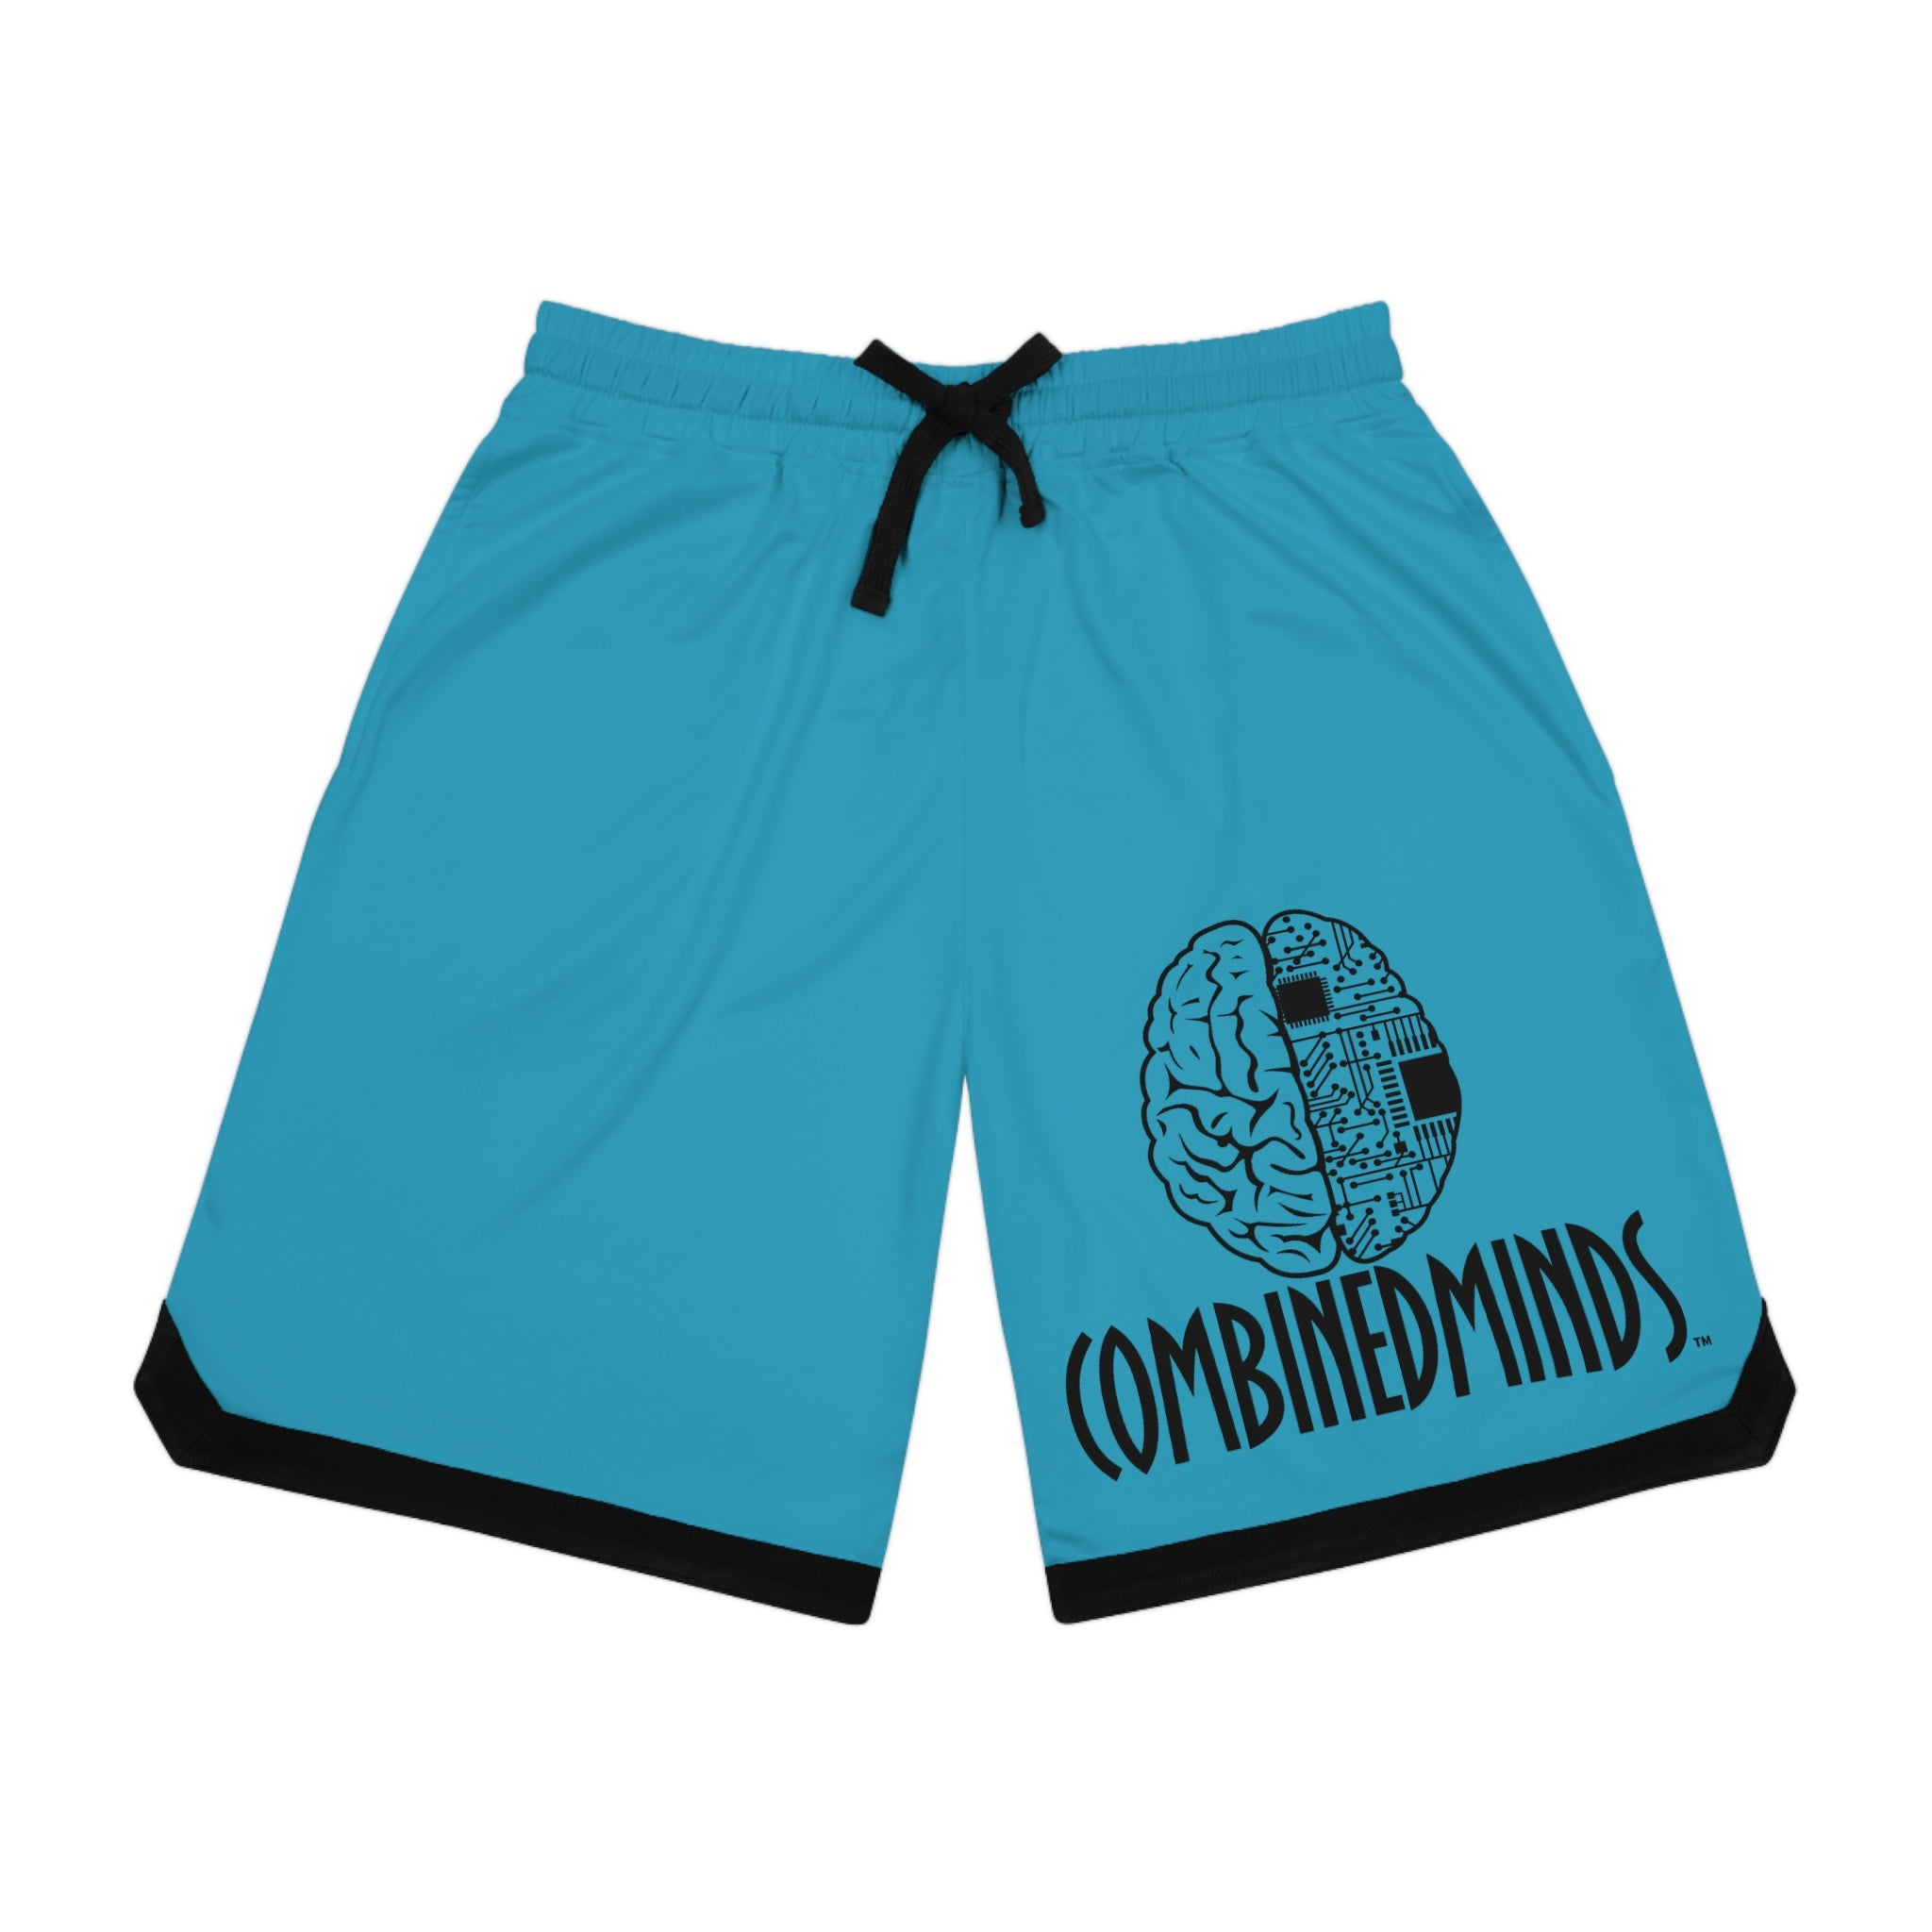 Combinedminds Basketball Shorts Turquoise/Black Logo